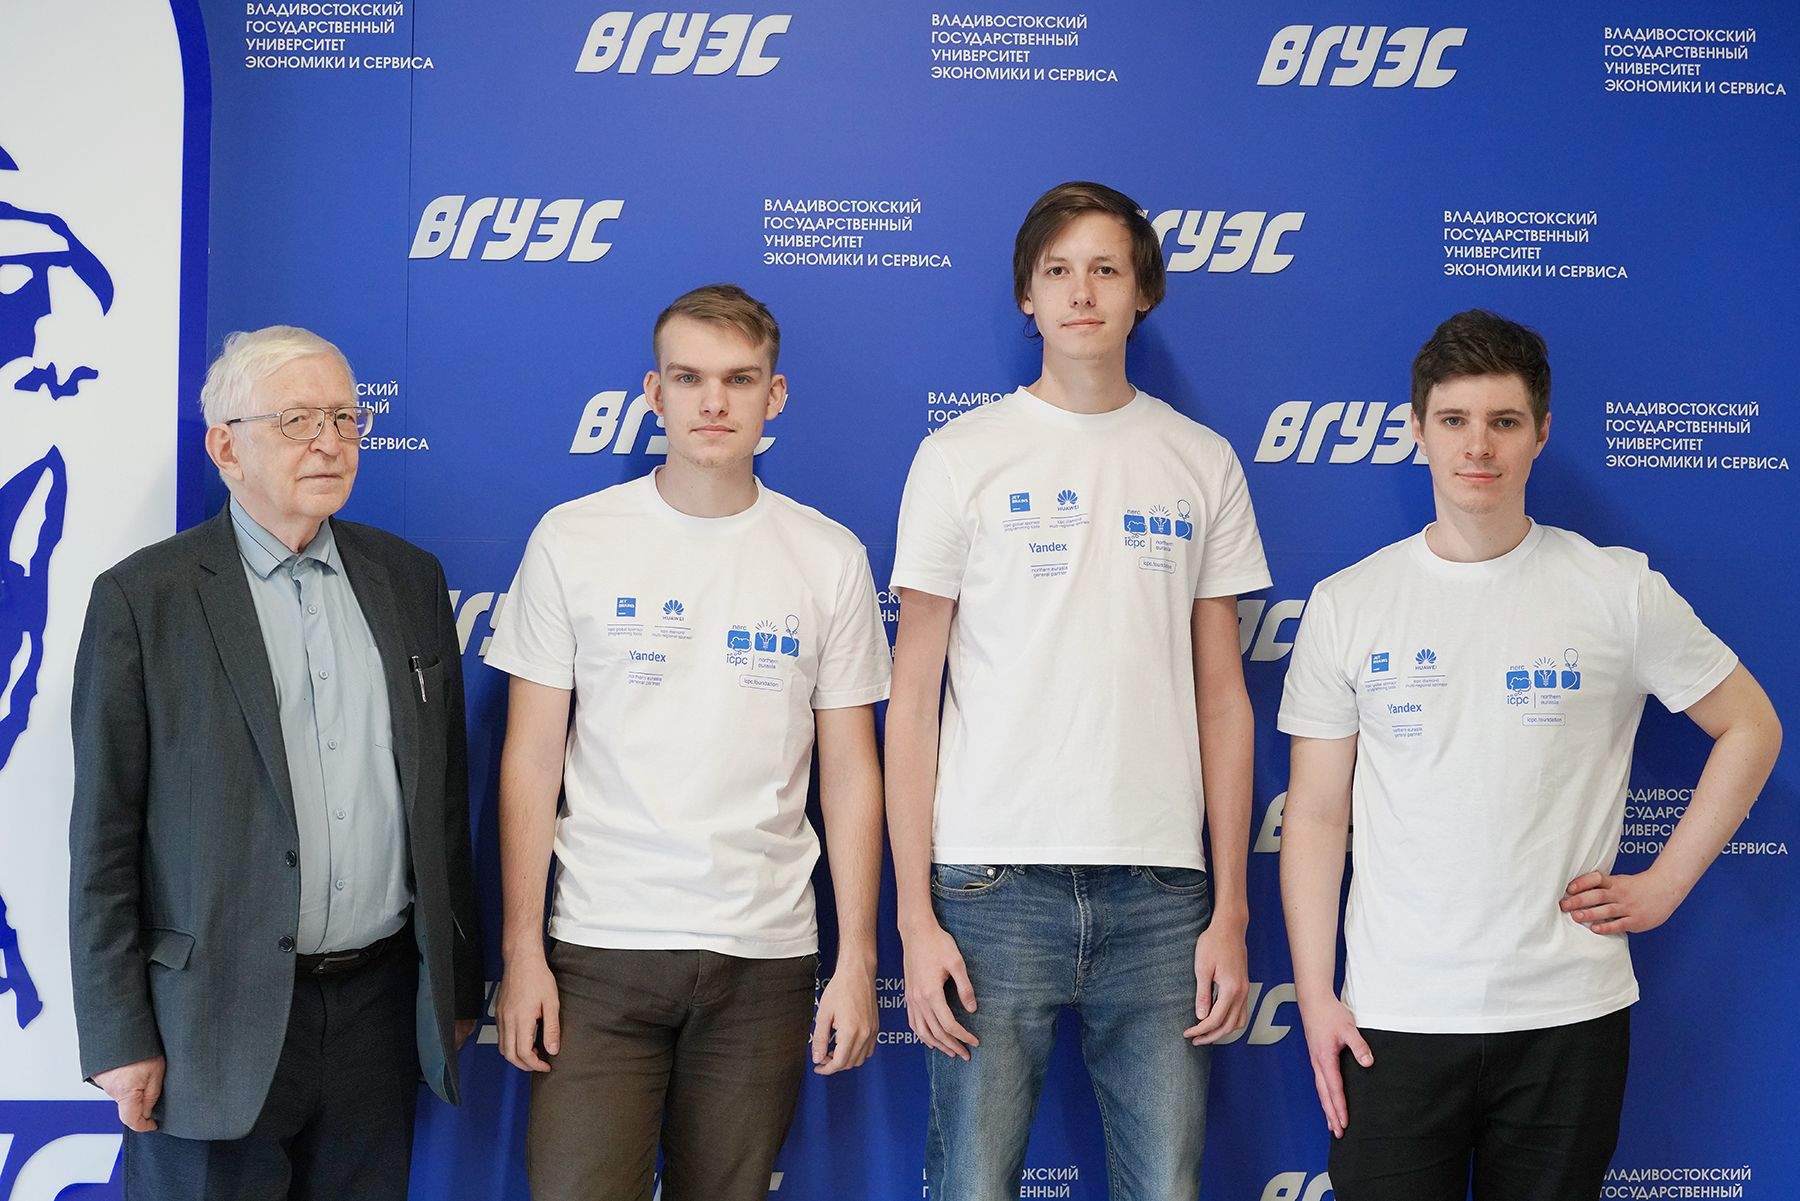 Студенты Кафедры ИТС вышли в полуфинал чемпионата мира по программированию ICPC